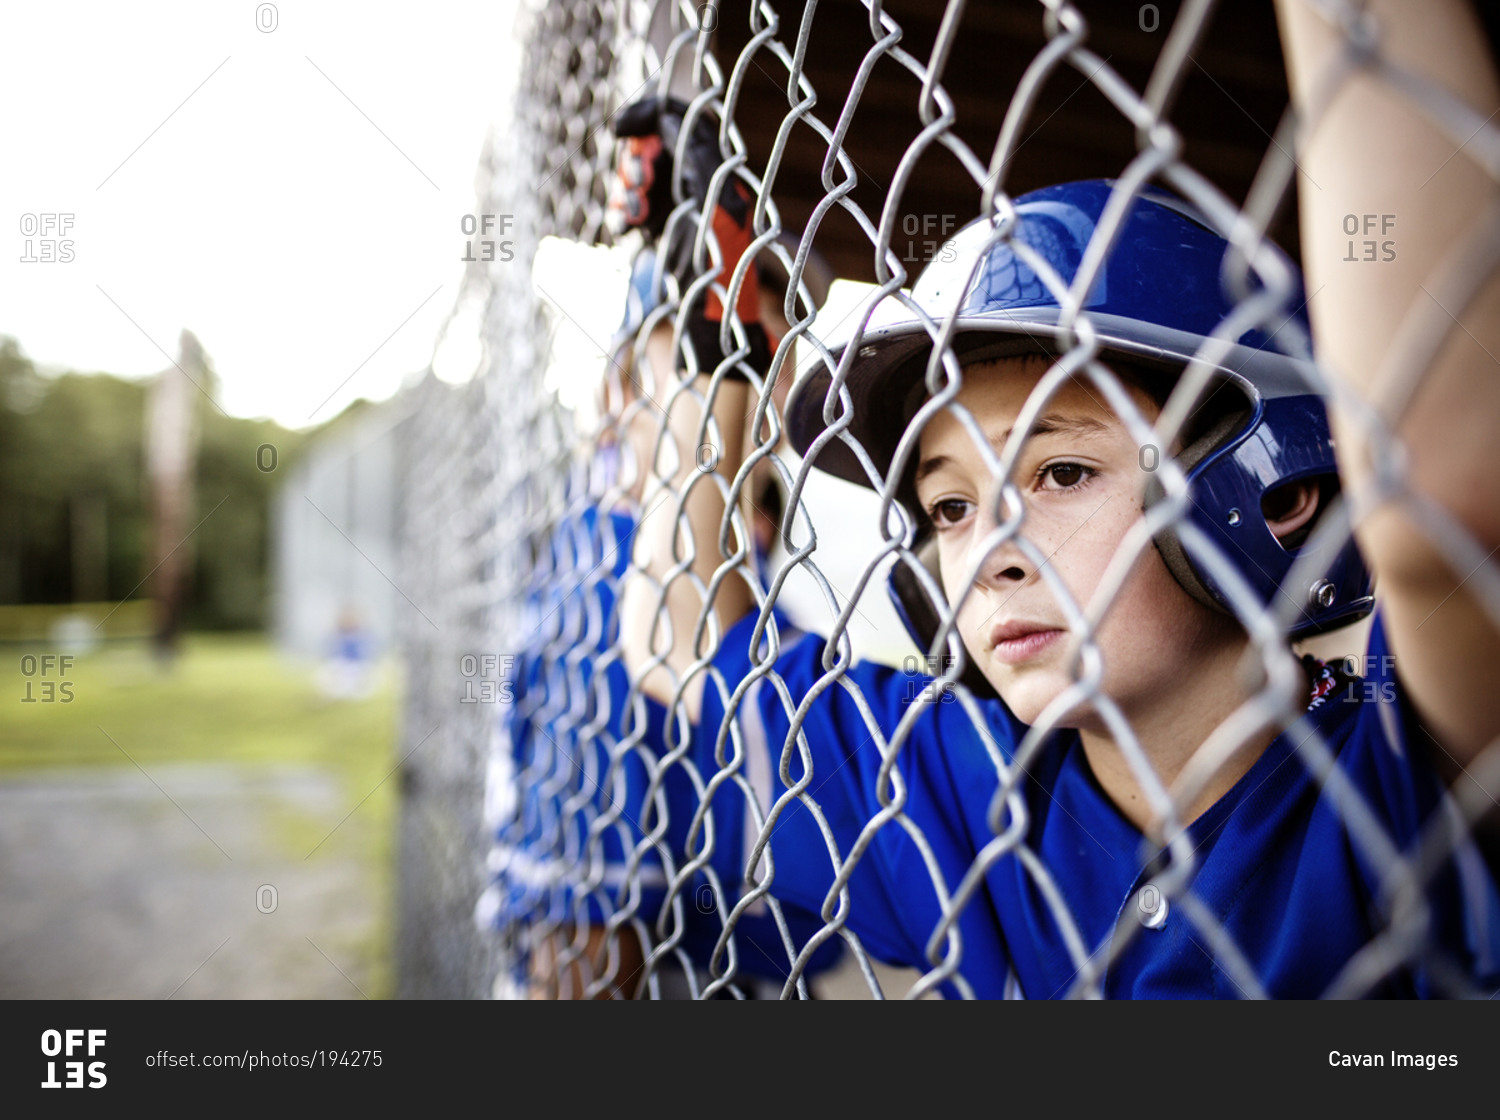 A boy watches his baseball team play